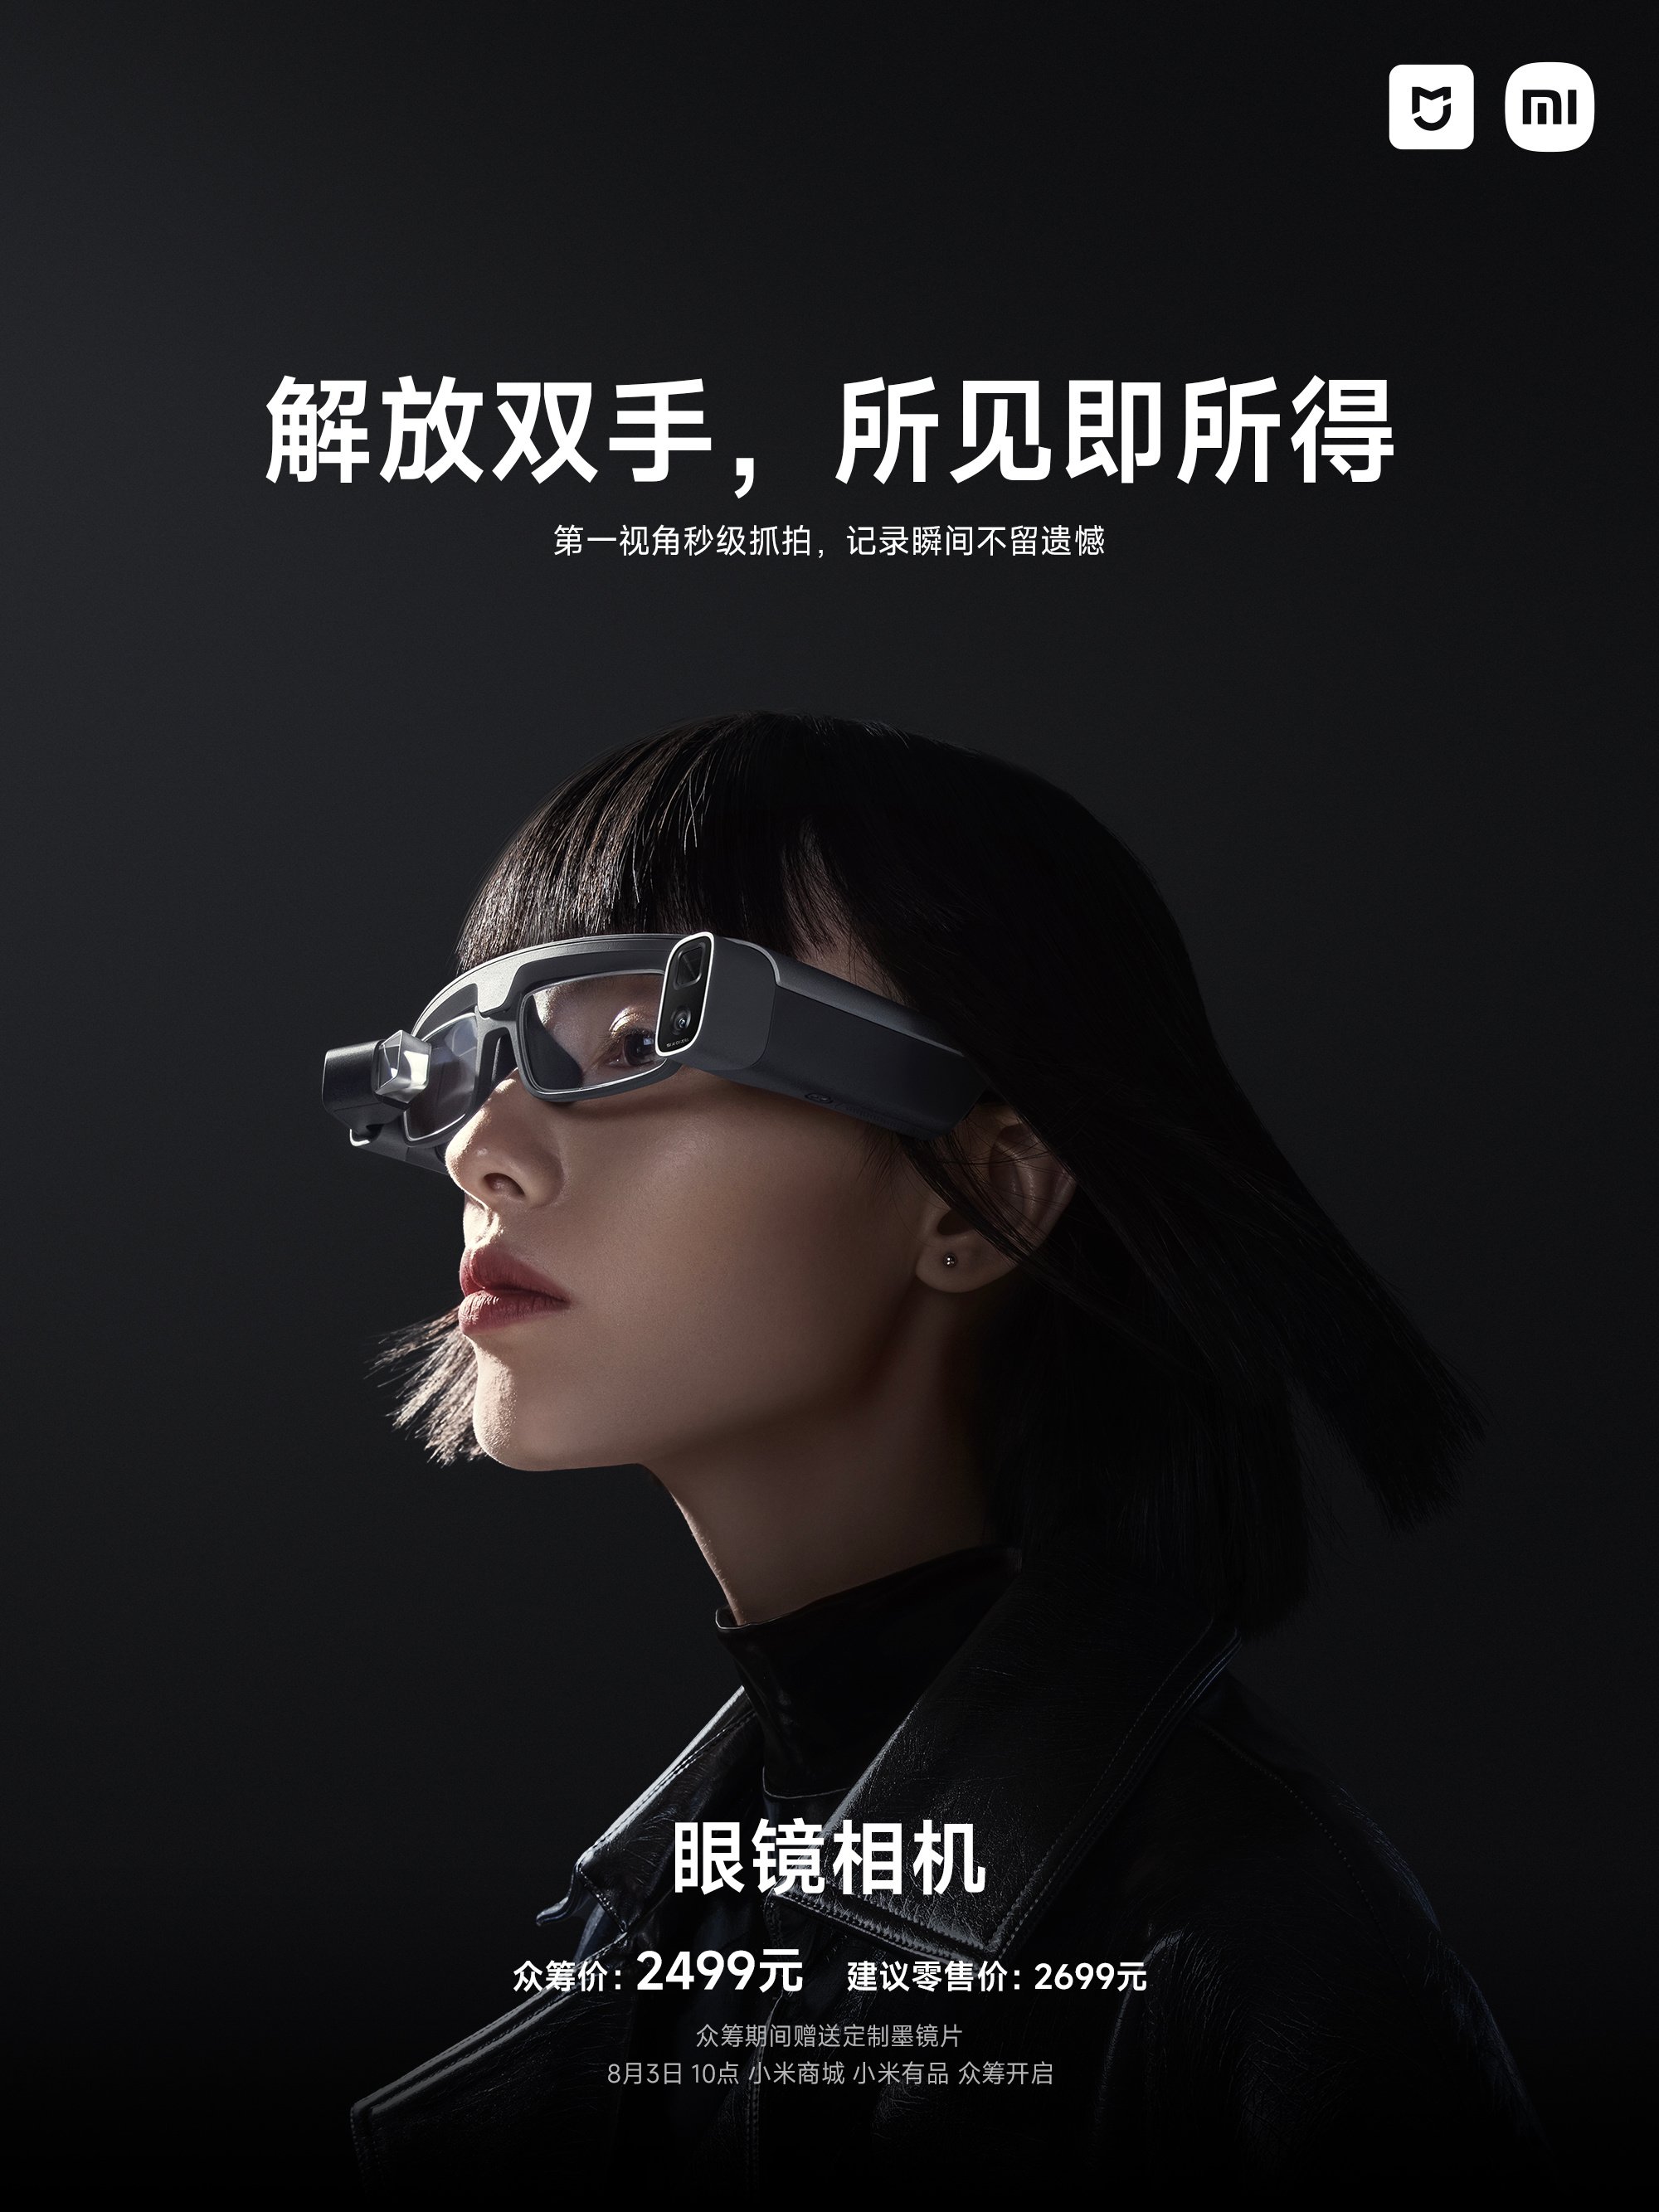 Pranala bentuk kacamata pintar Mijia. (Sumber gambar: Weibo/Xiaomi China)